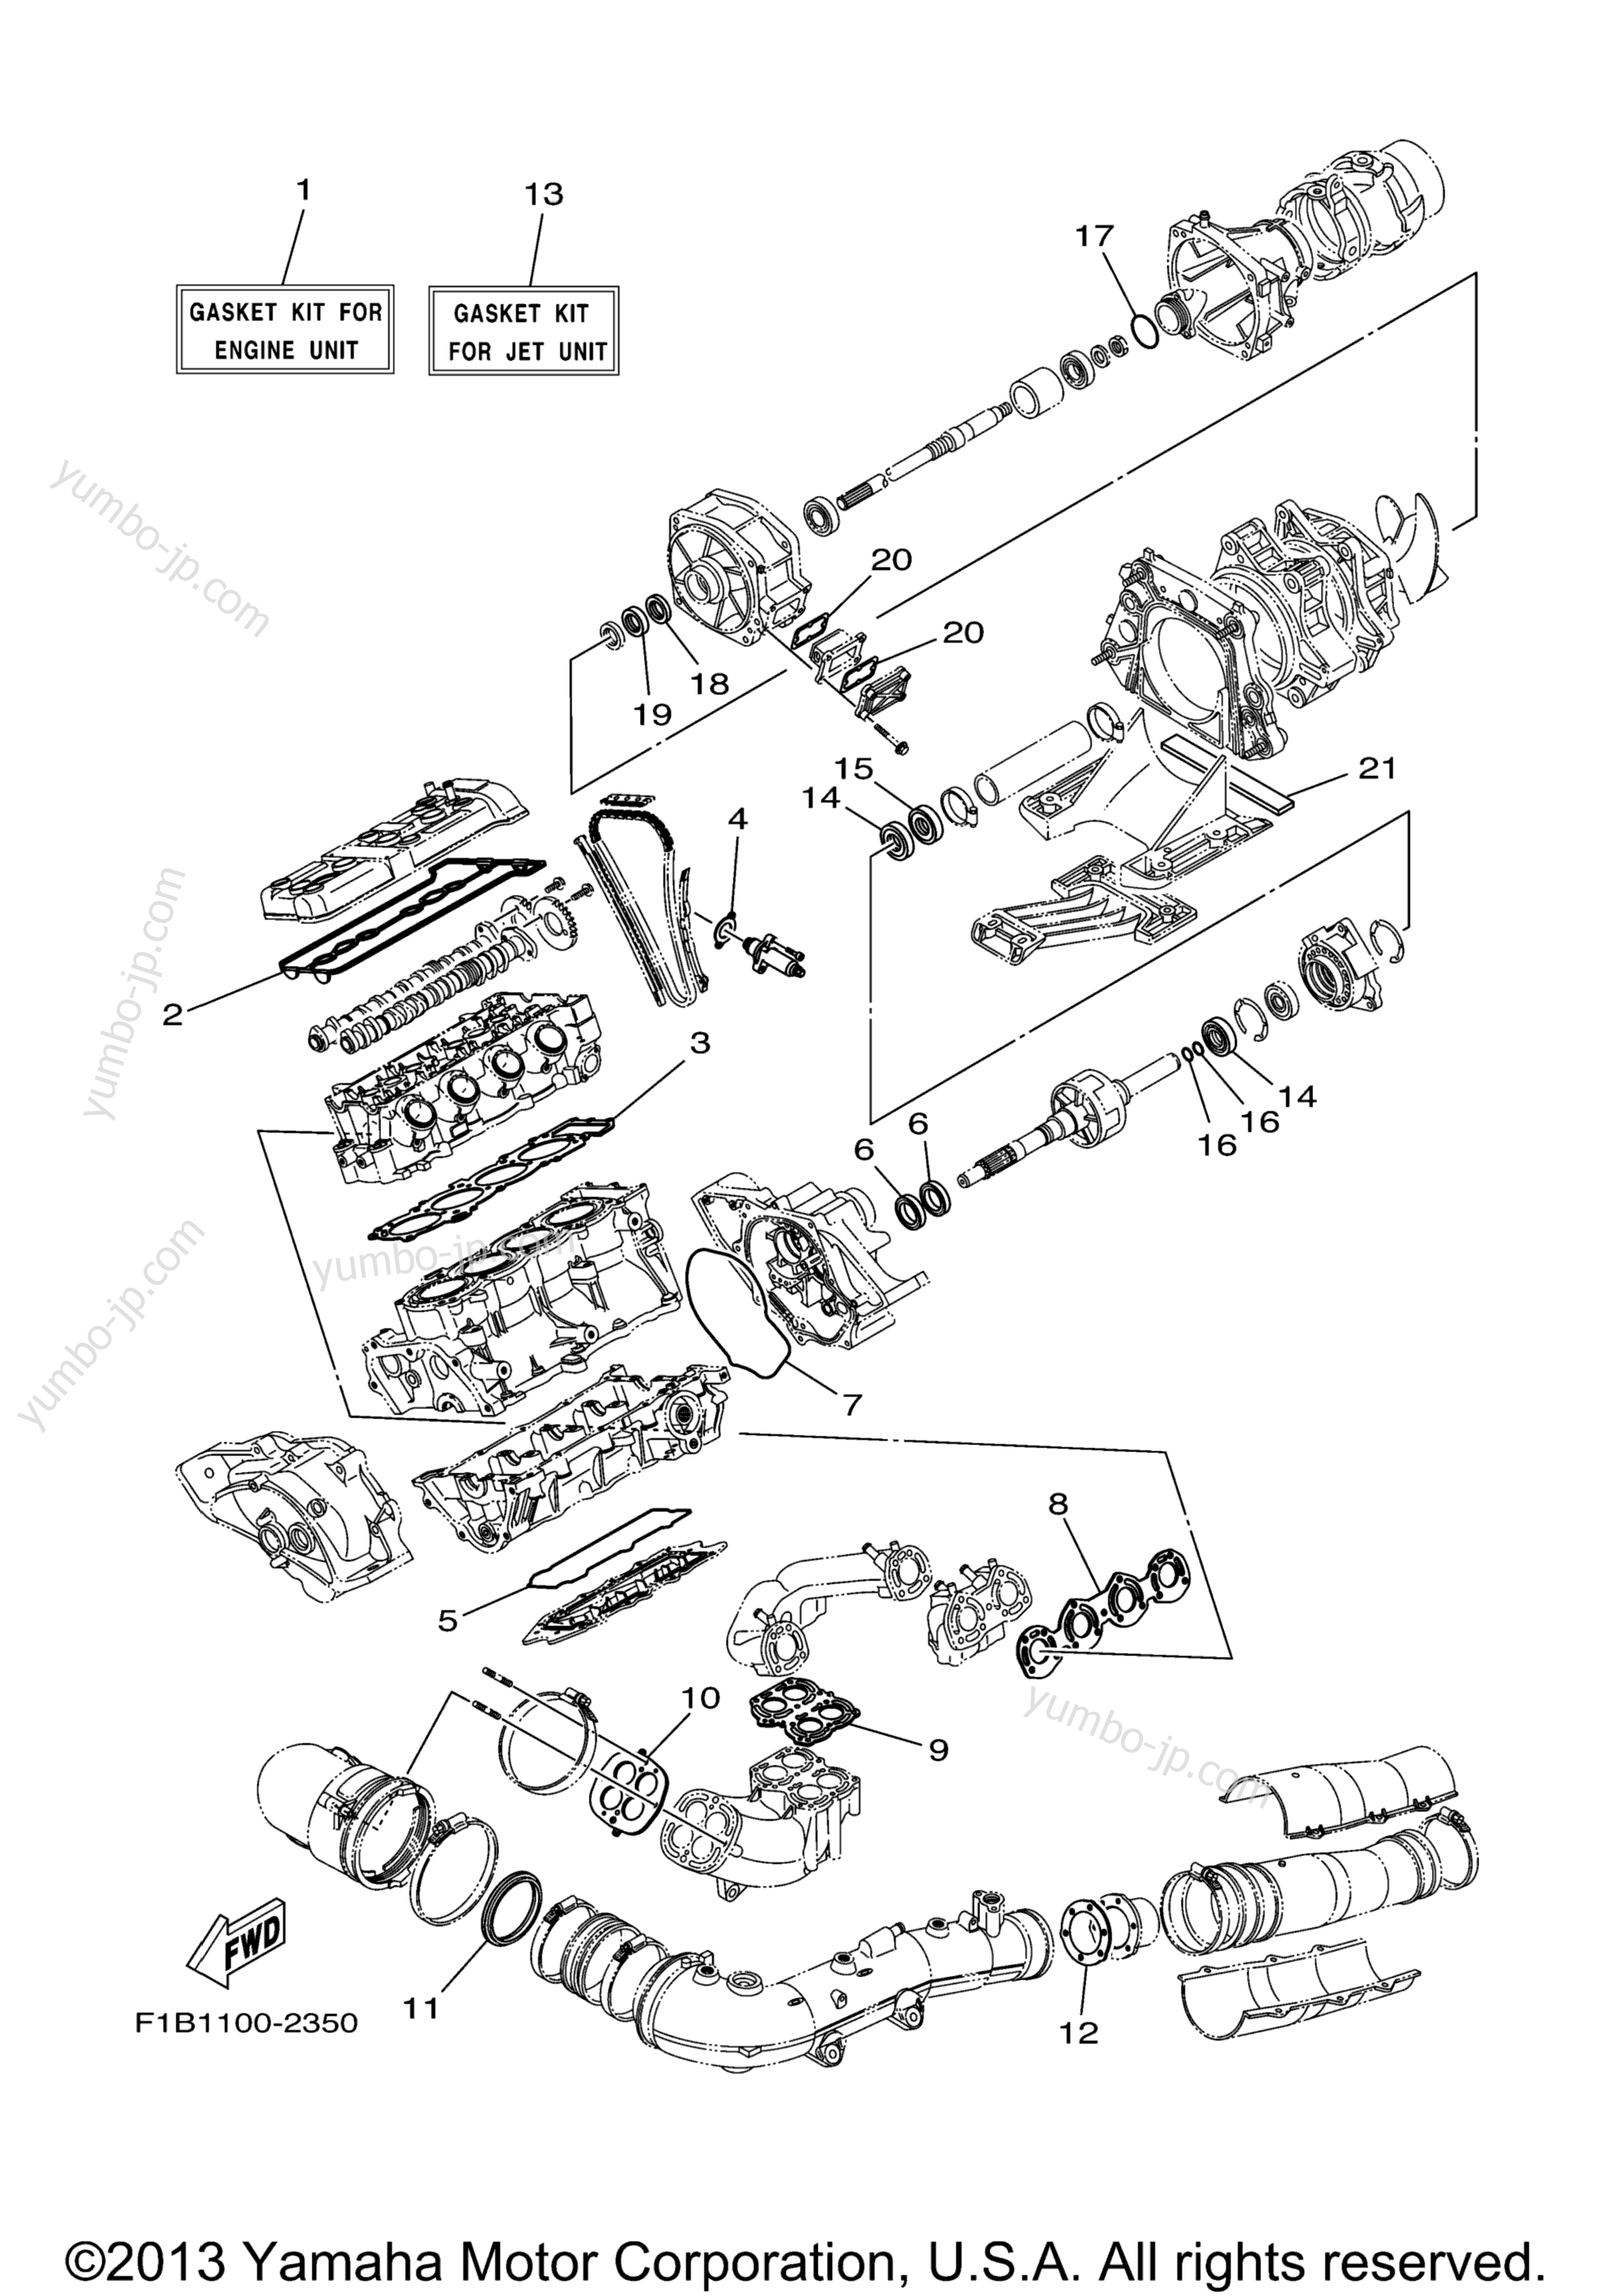 Repair Kit 1 для гидроциклов YAMAHA FX140 (FX1000B) 2003 г.